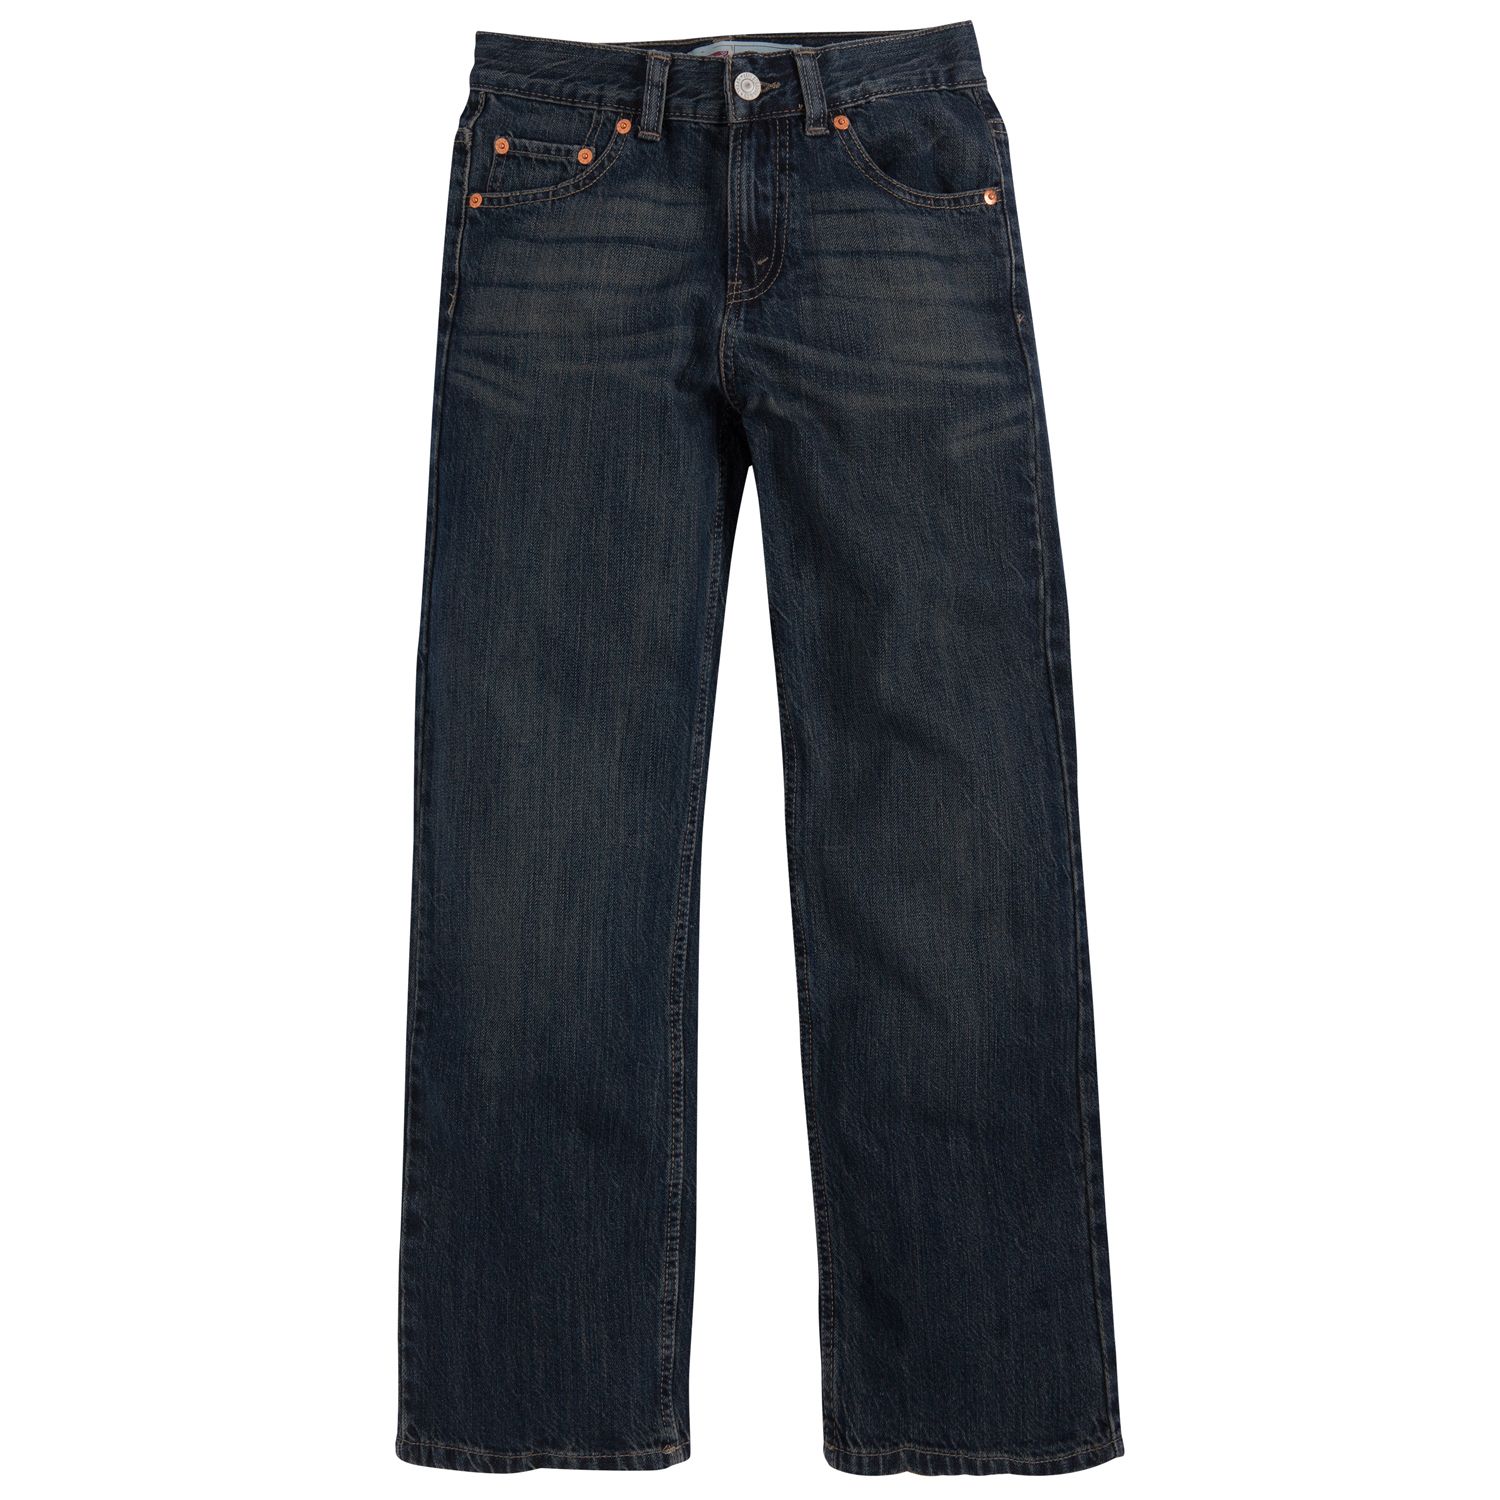 levis 550 jeans kohls